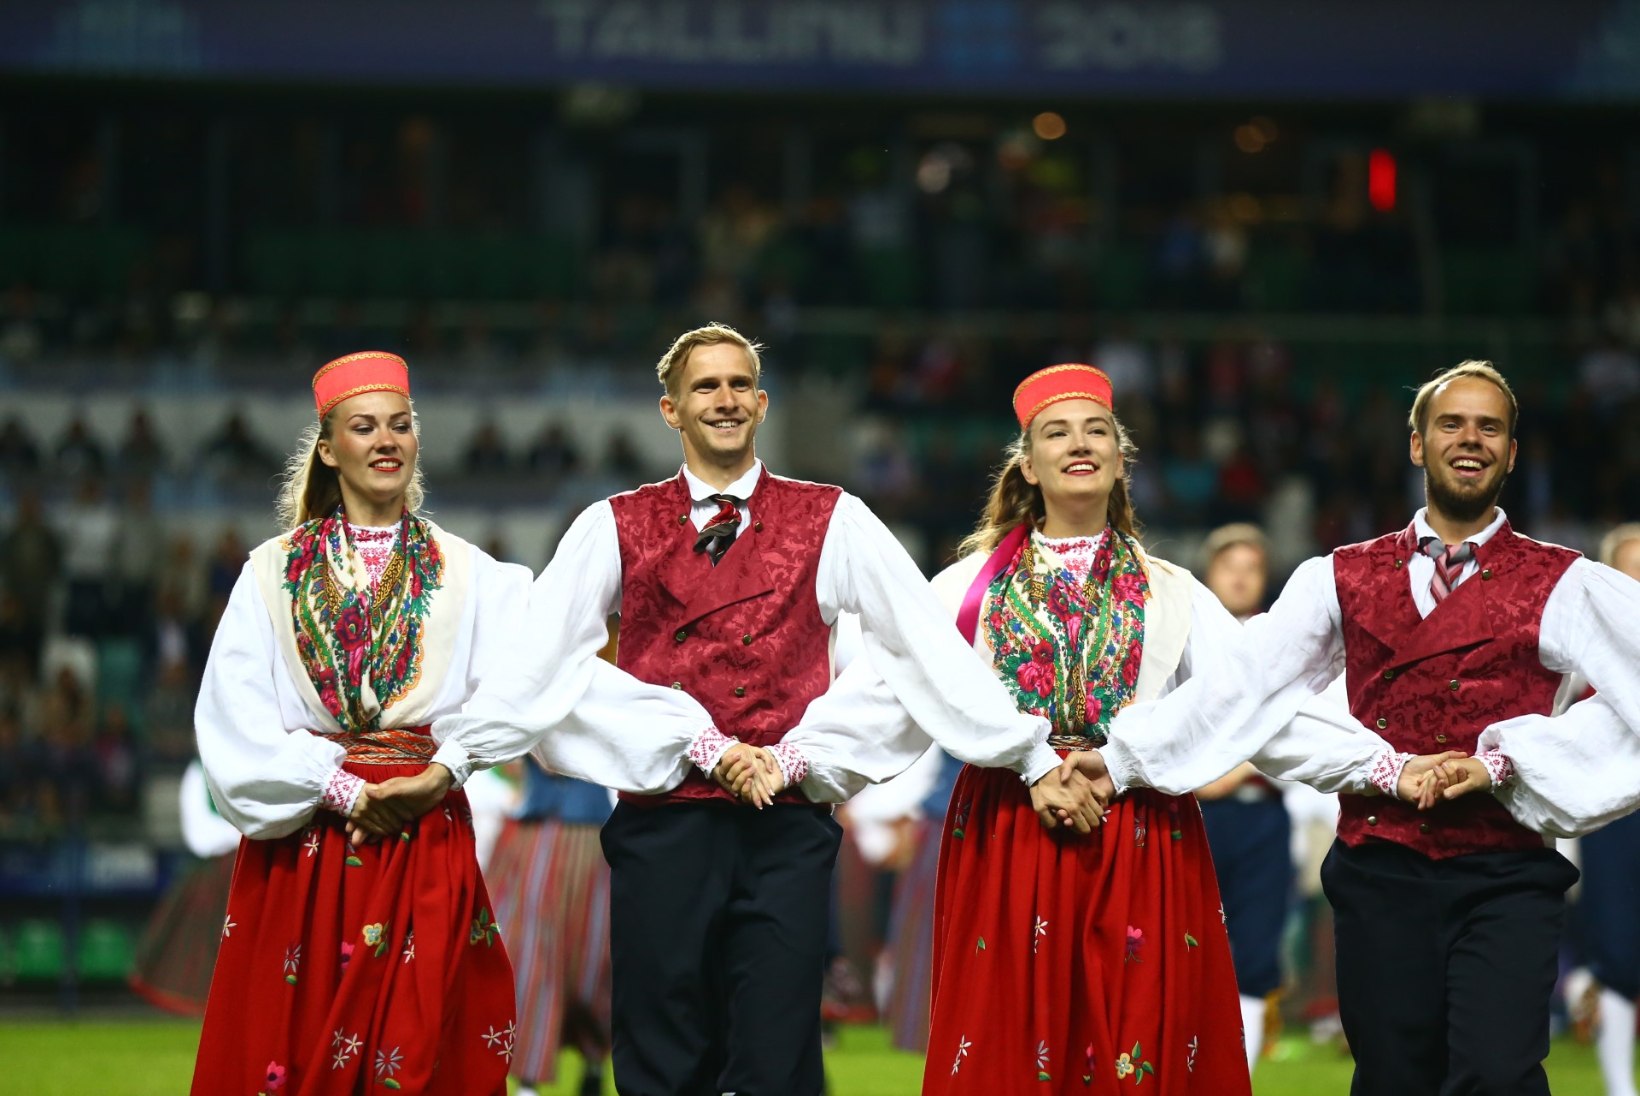 FOTOD | Superkarika avatseremoonia: Eesti rahvatants jõudis üle maailma enam kui 50 miljoni inimeseni 